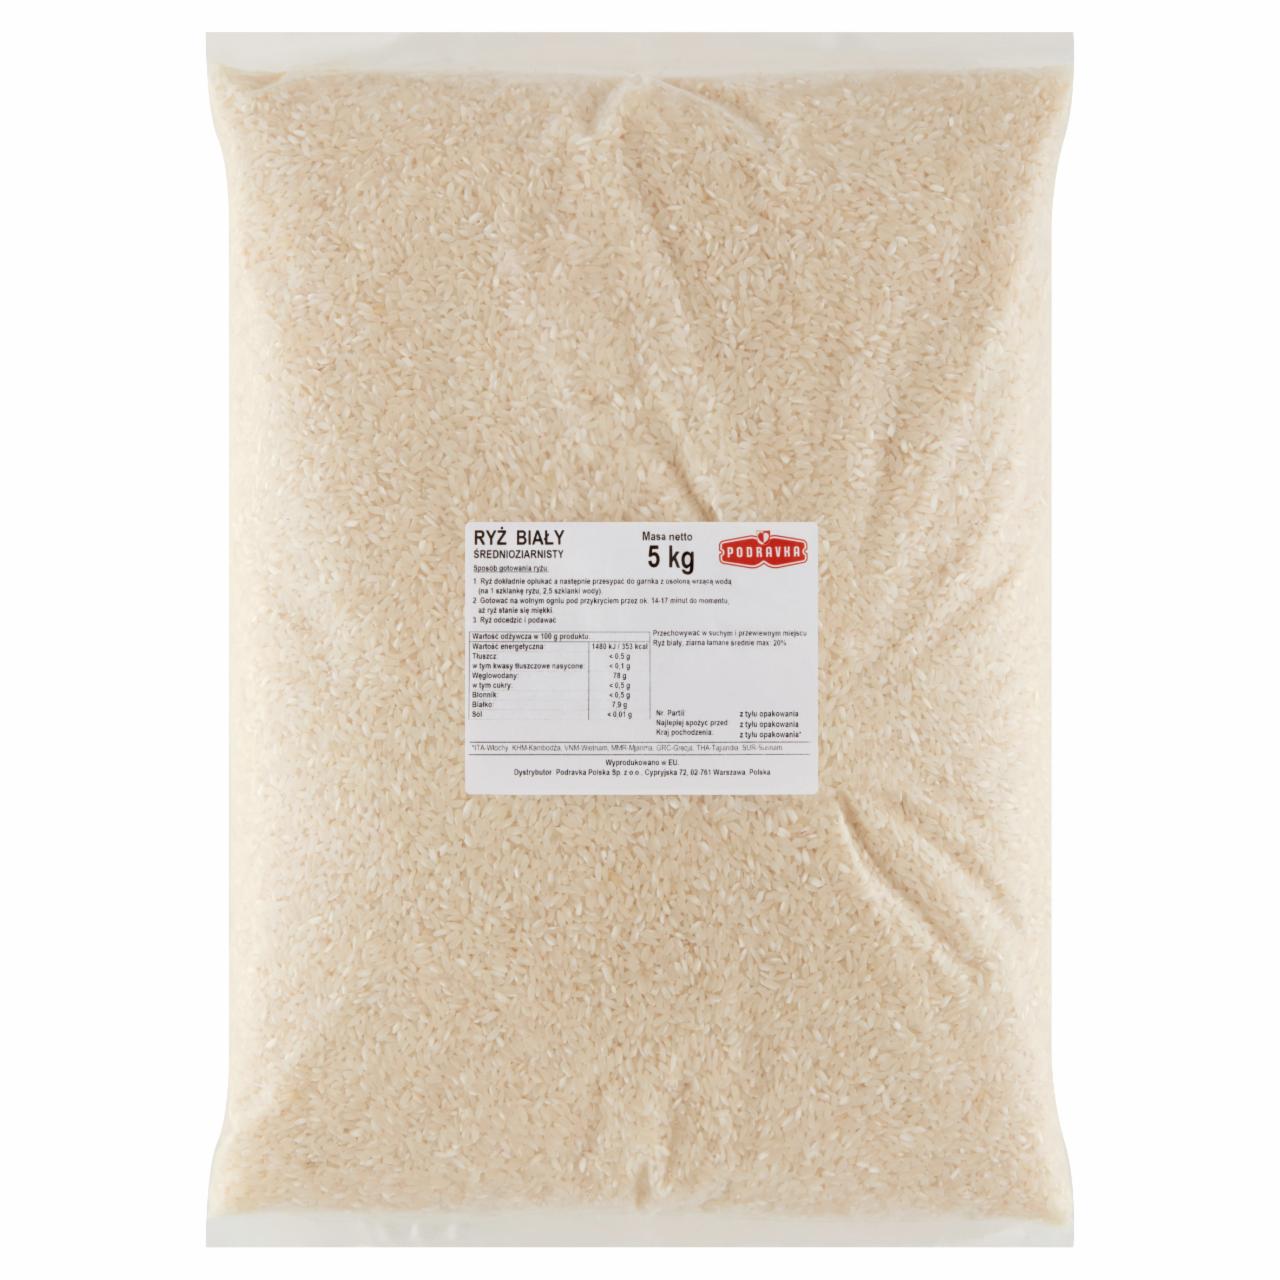 Zdjęcia - Podravka Ryż biały średnioziarnisty 5 kg